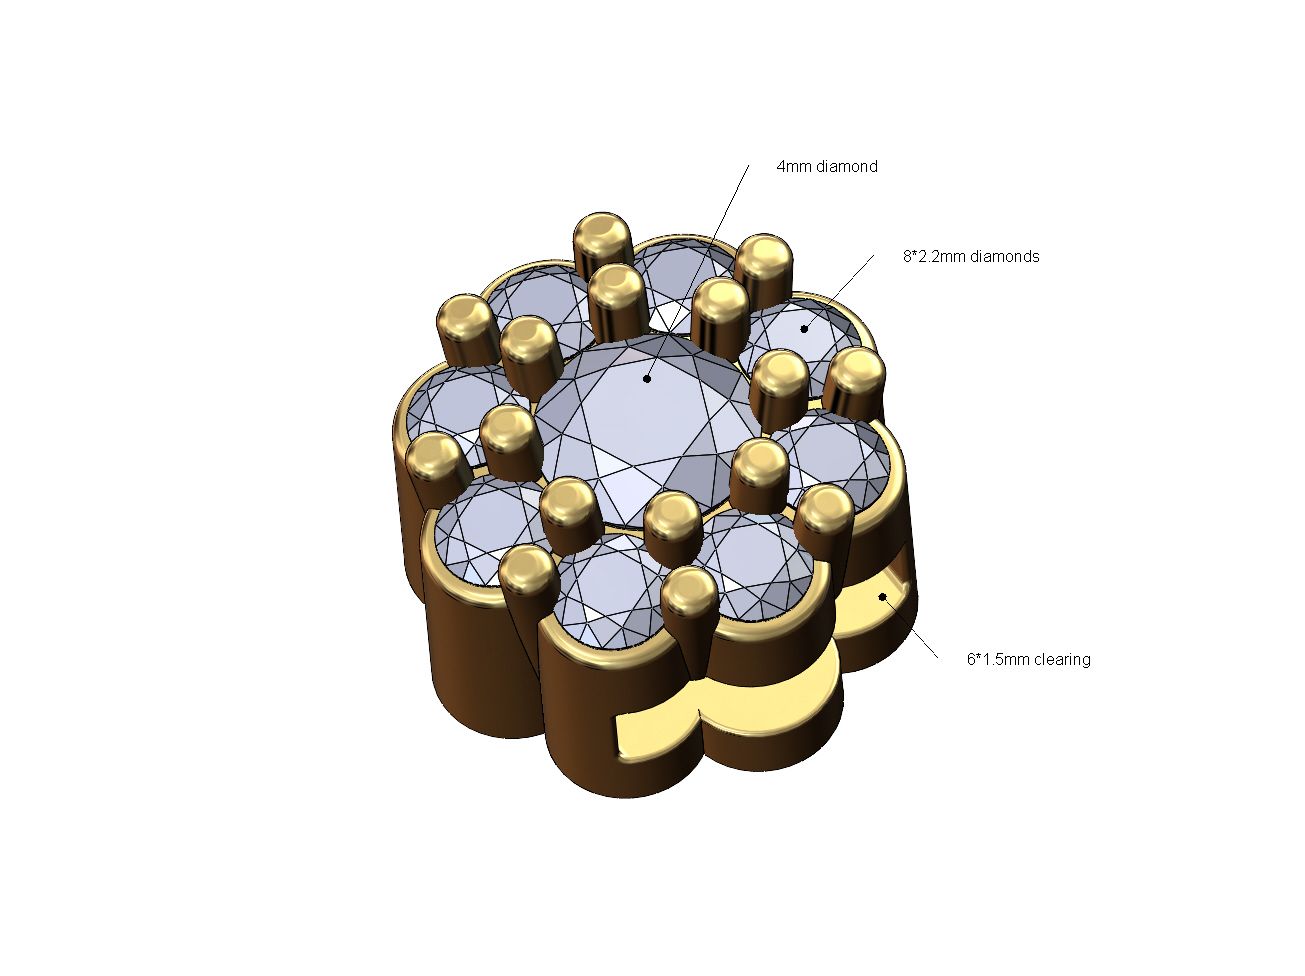 7 8*2.2mm diamonds Jf Archivo STL Pulsera de racimo de diamantes de burbuja redonda modelo de impresión 3D・Diseño imprimible en 3D para descargar, RachidSW